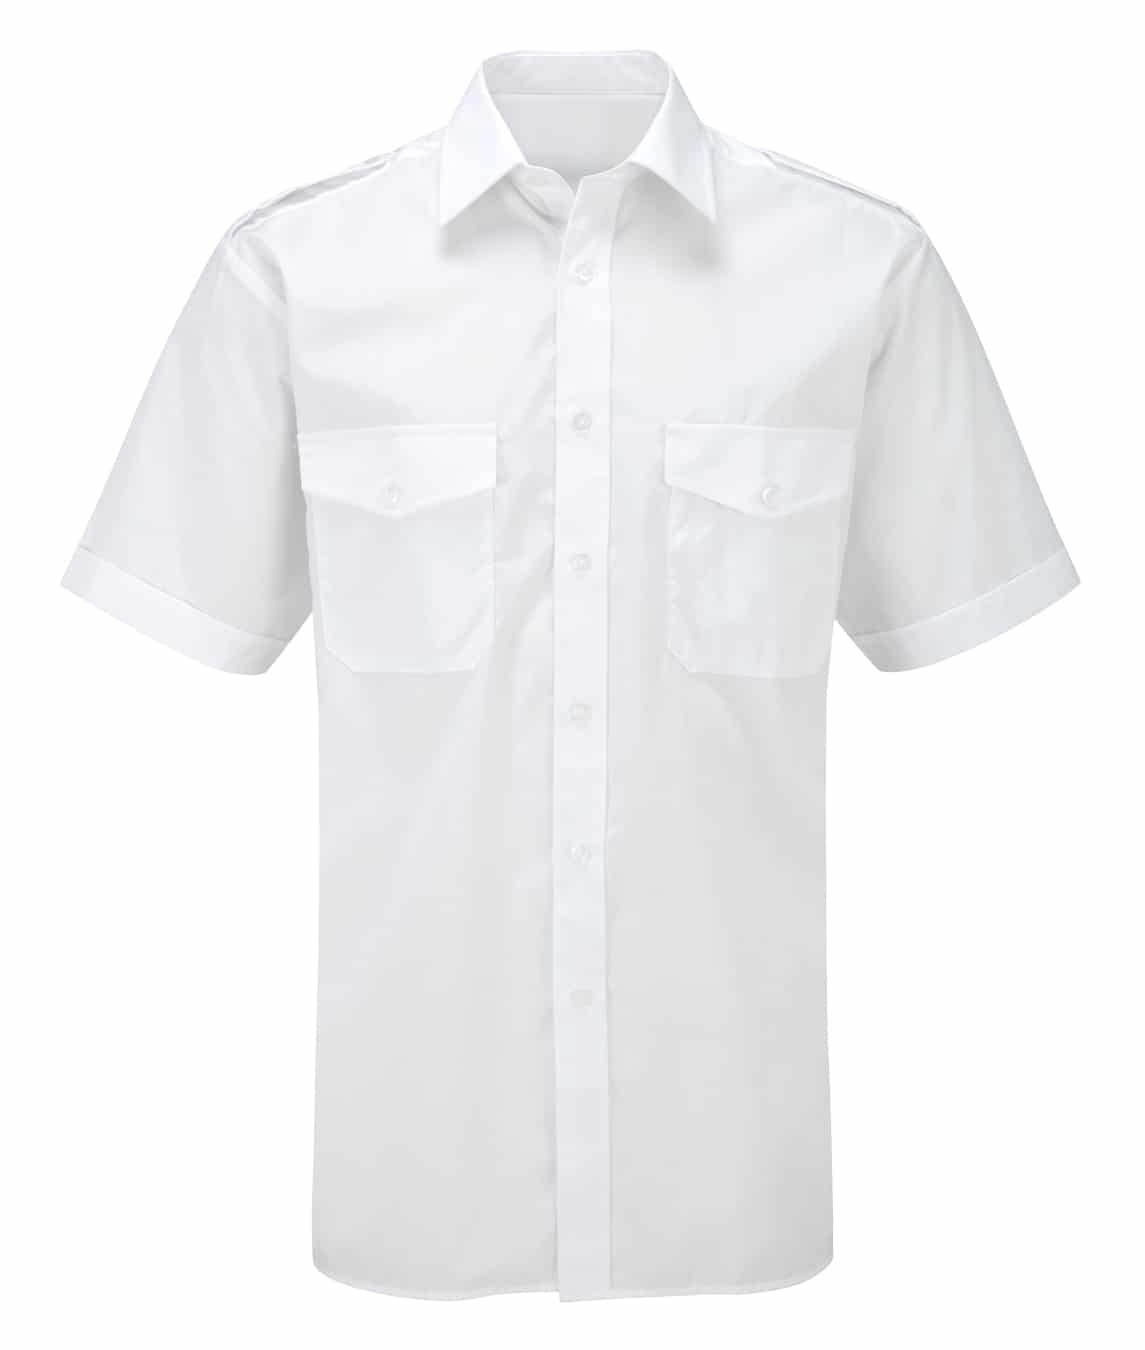 Pilot Shirt Men's: Short Sleeve